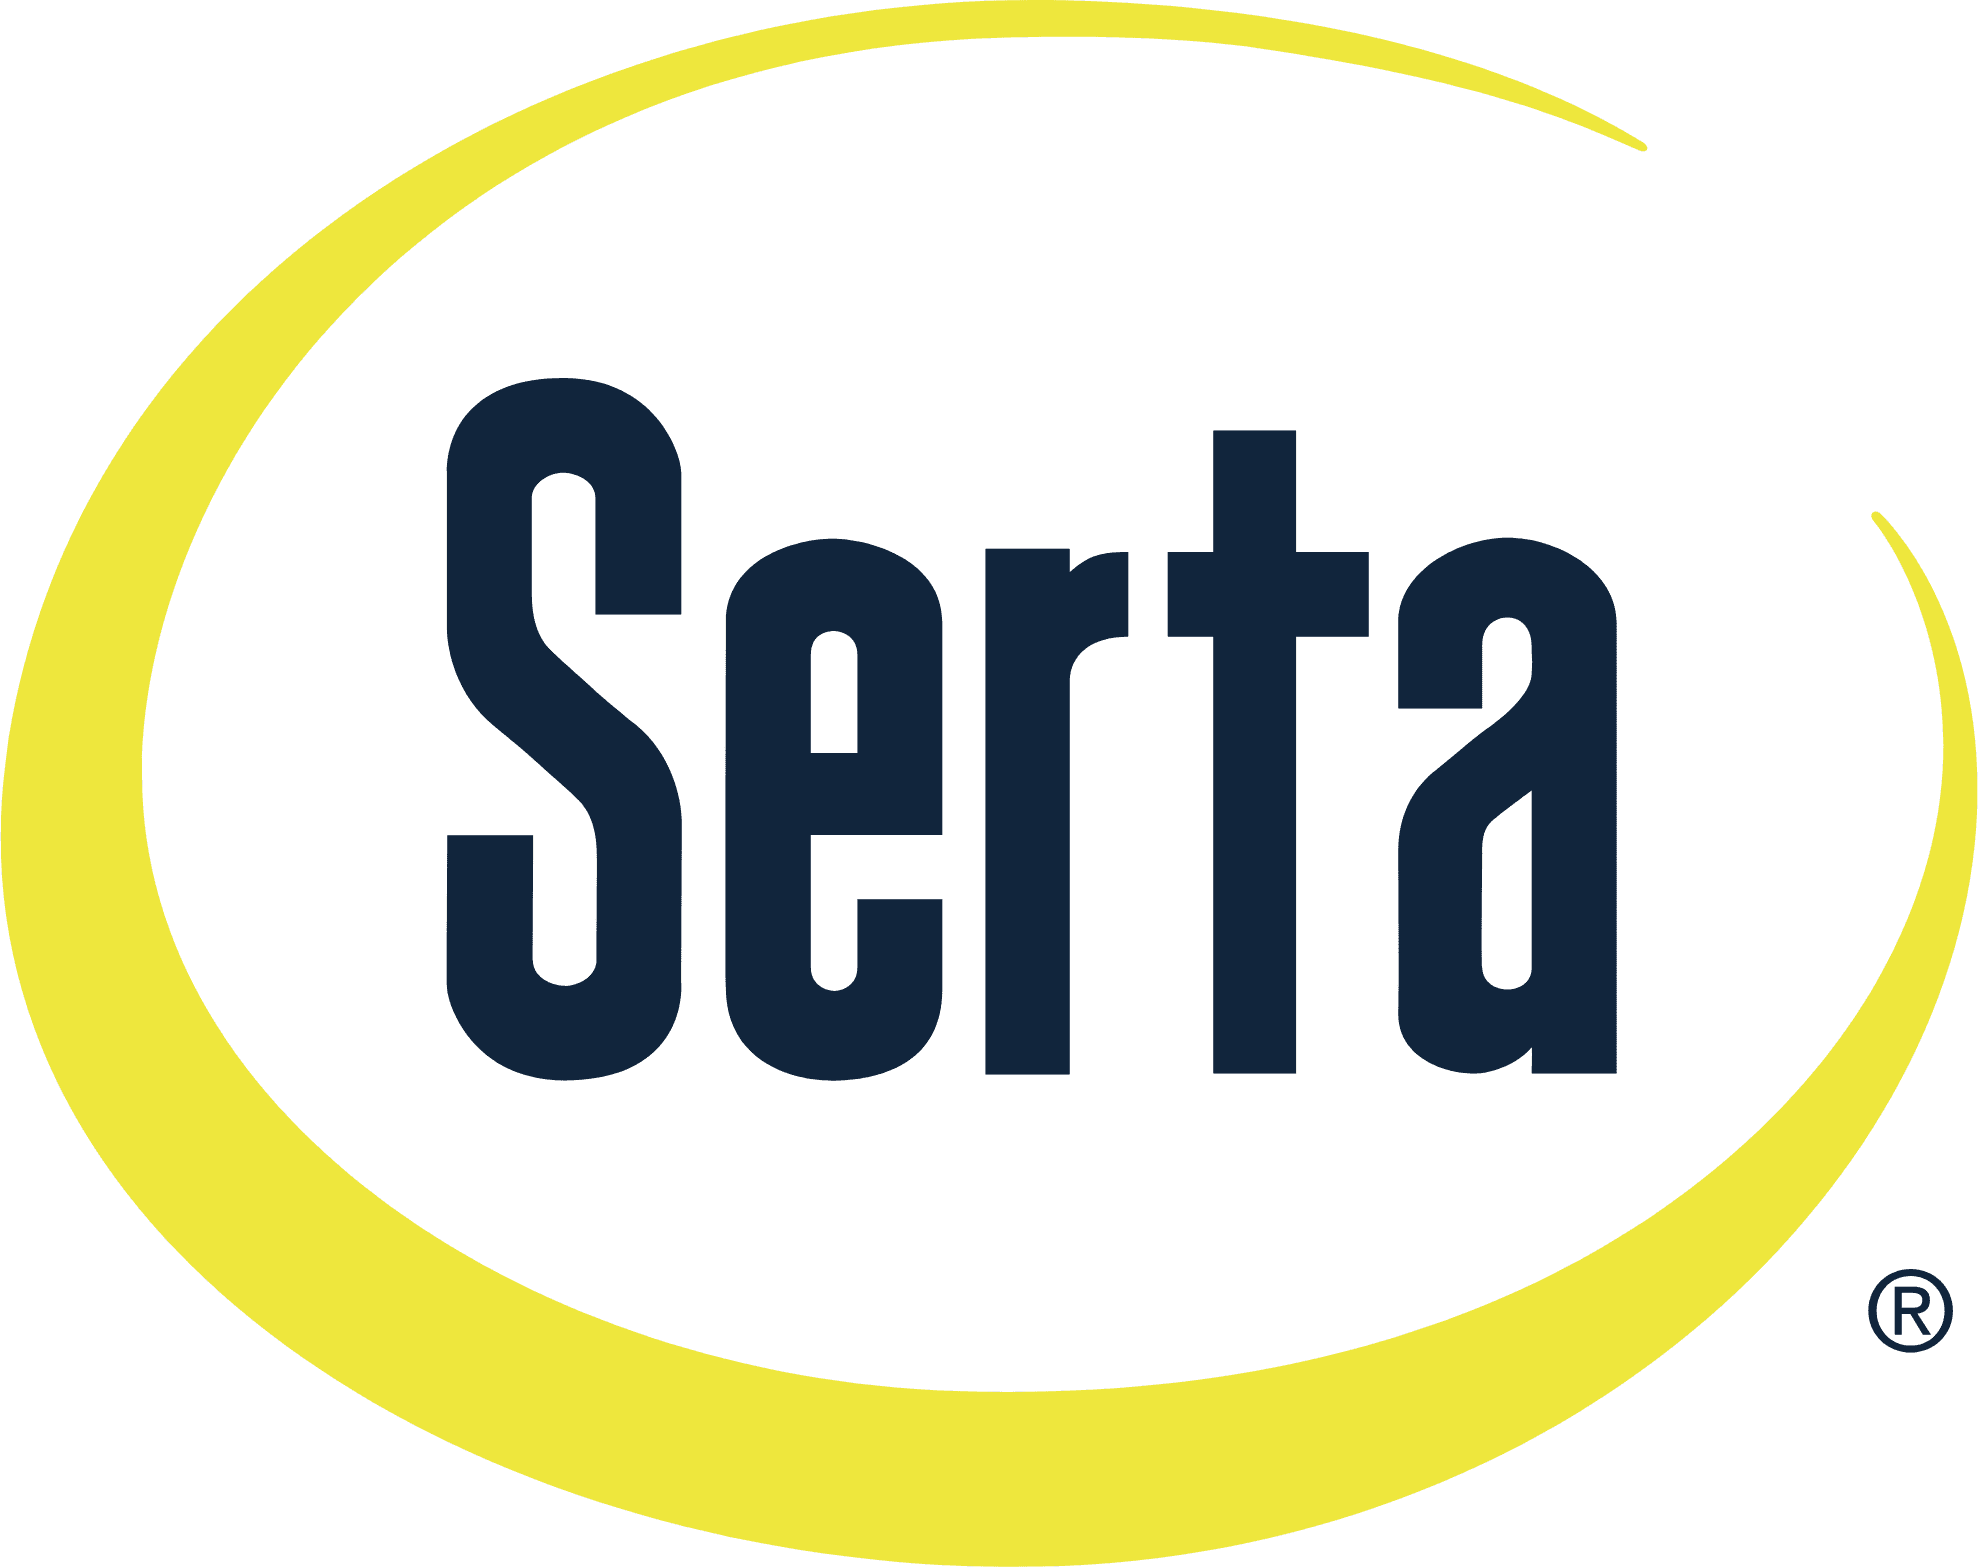 Setra